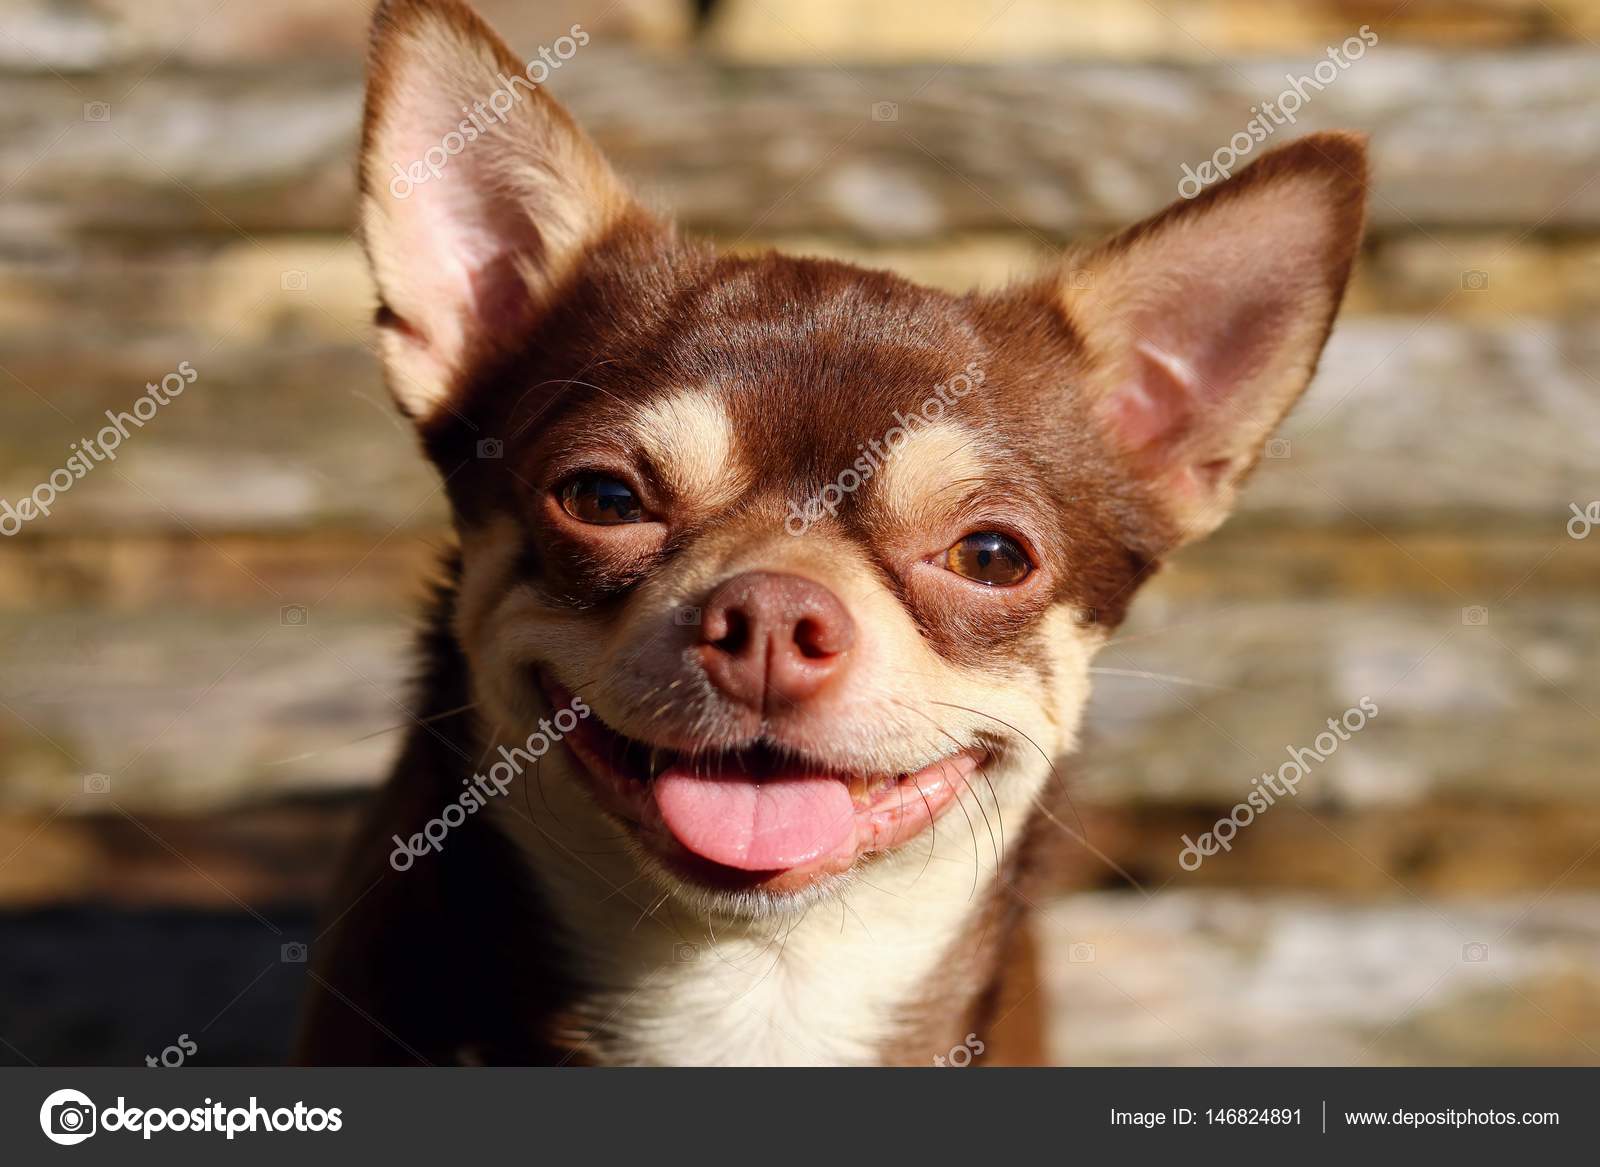 weird dog smile